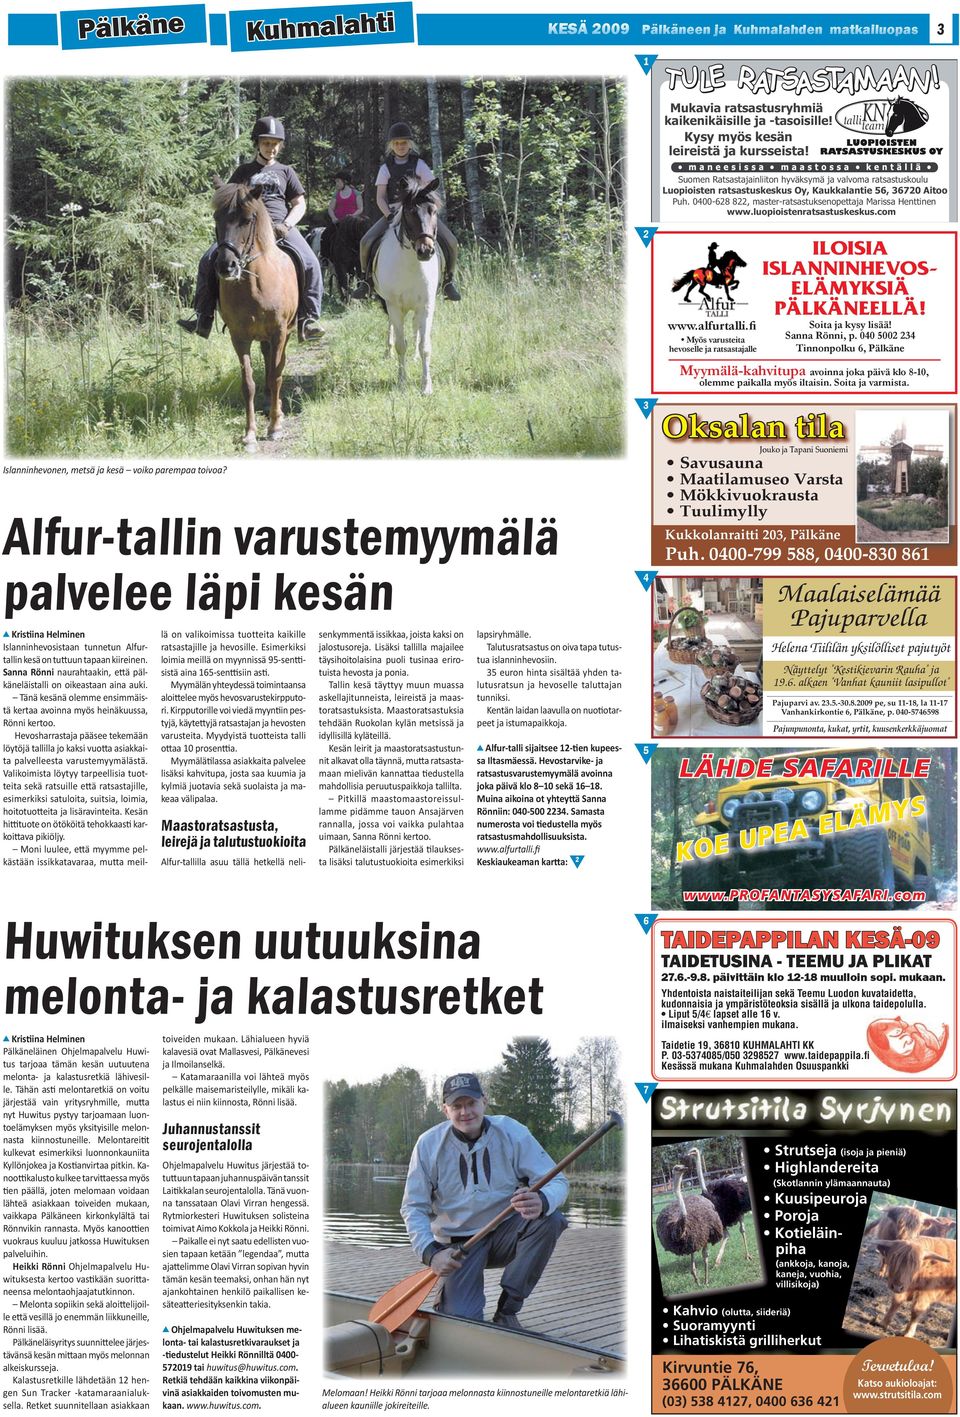 luopioistenratsastuskeskus.com 2 www.alfurtalli. Myös varusteita hevoselle ja ratsastajalle ILOISIA ISLANNINHEVOS- ELÄMYKSIÄ PÄLKÄNEELLÄ! Soita ja kysy lisää! Sanna Rönni, p.